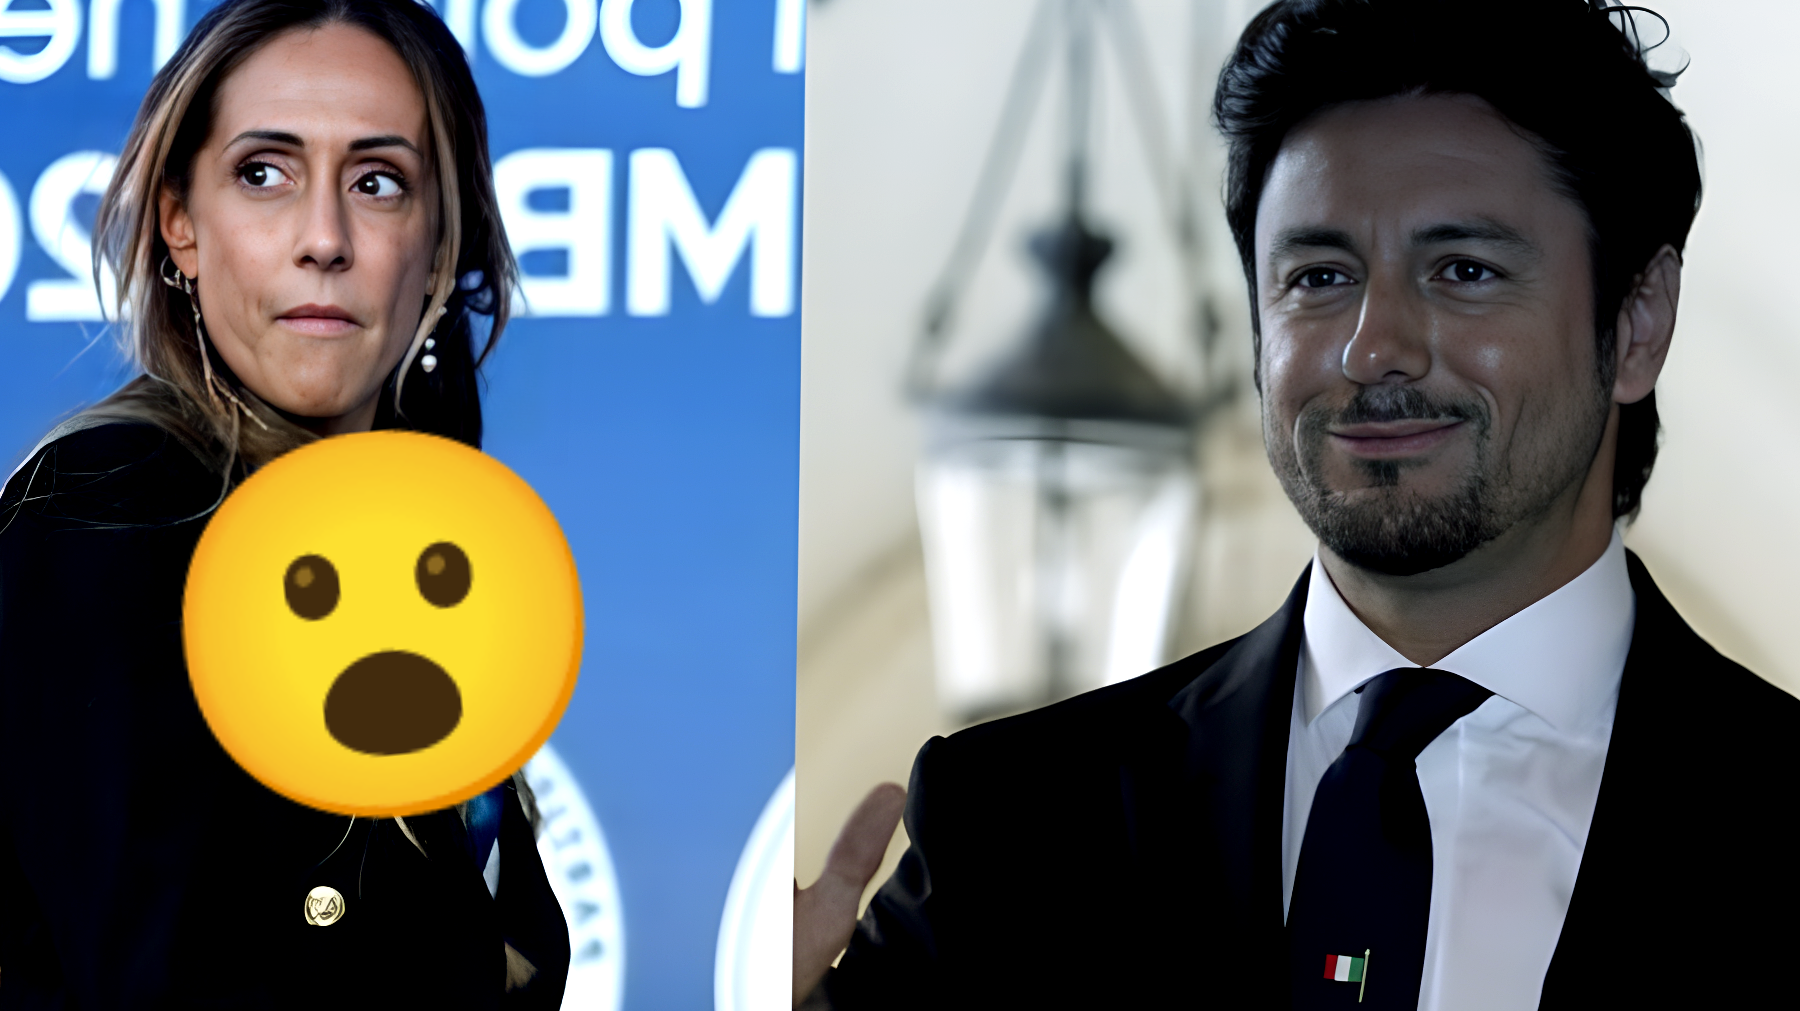 Scandalo politico: Arianna Meloni accusa Andrea Giambruno di comportamento inappropriato verso Atreju